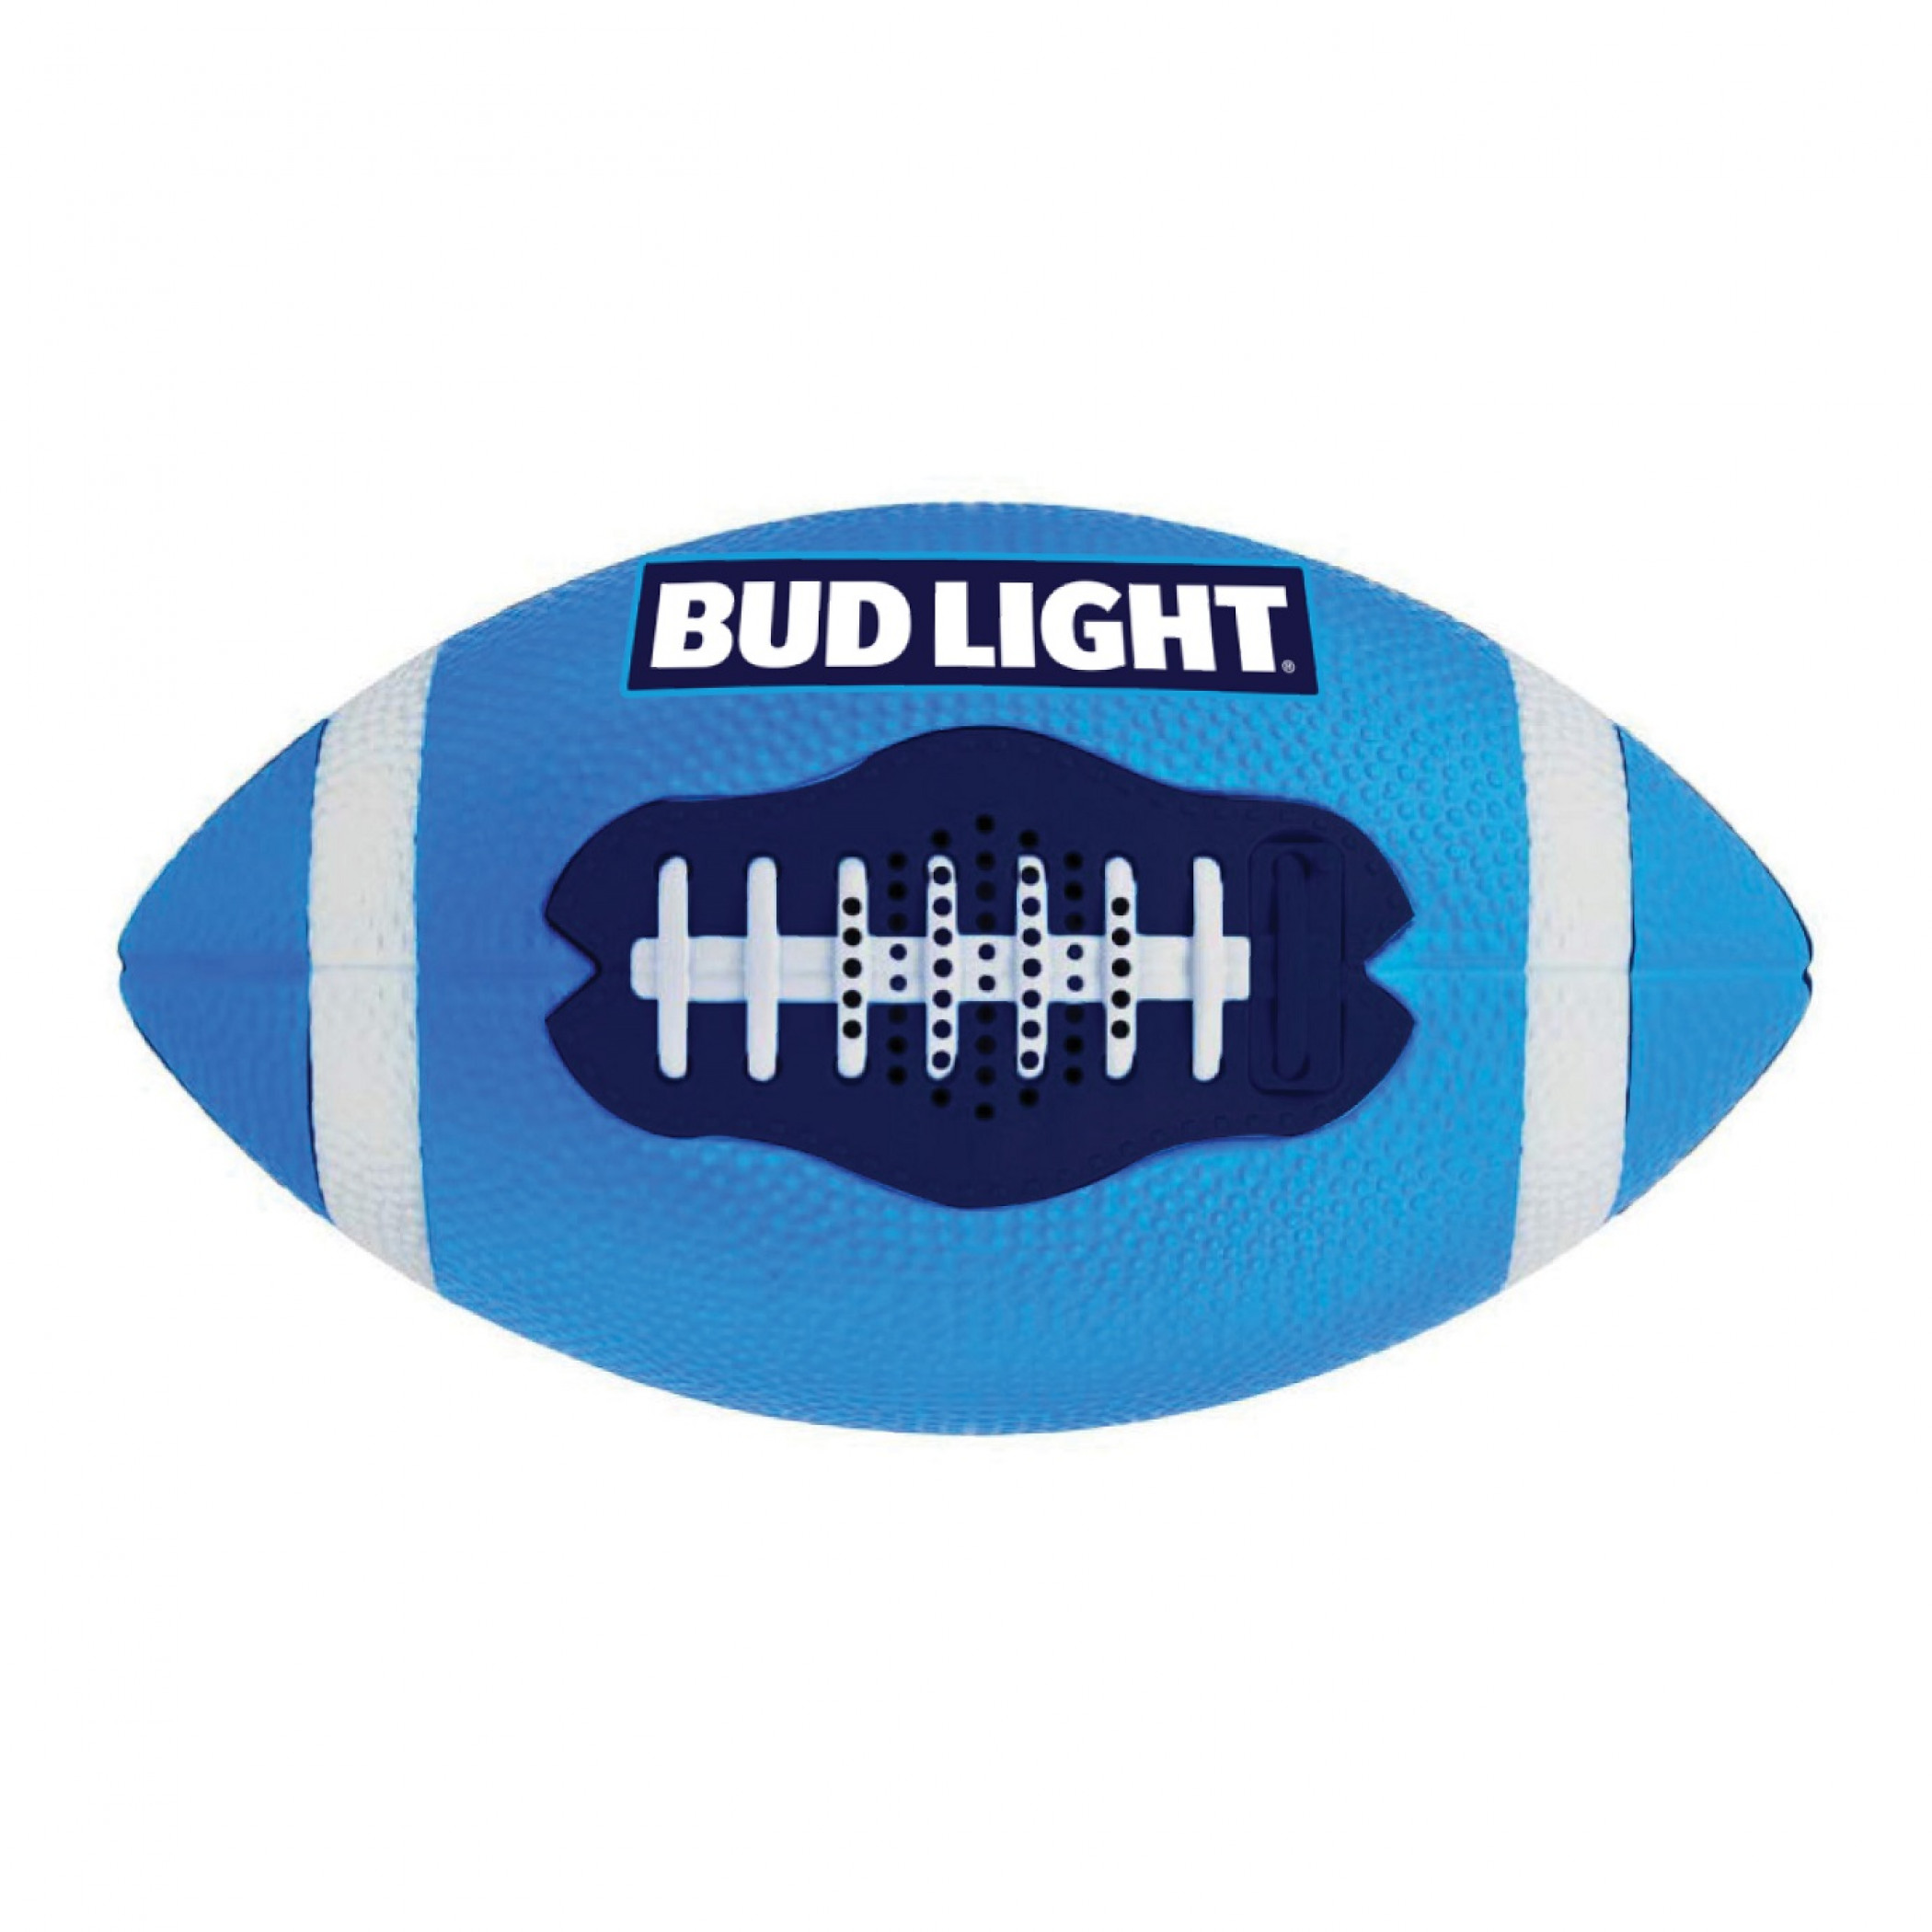 Bud Light Bluetooth Football Speaker Inflated & Playable